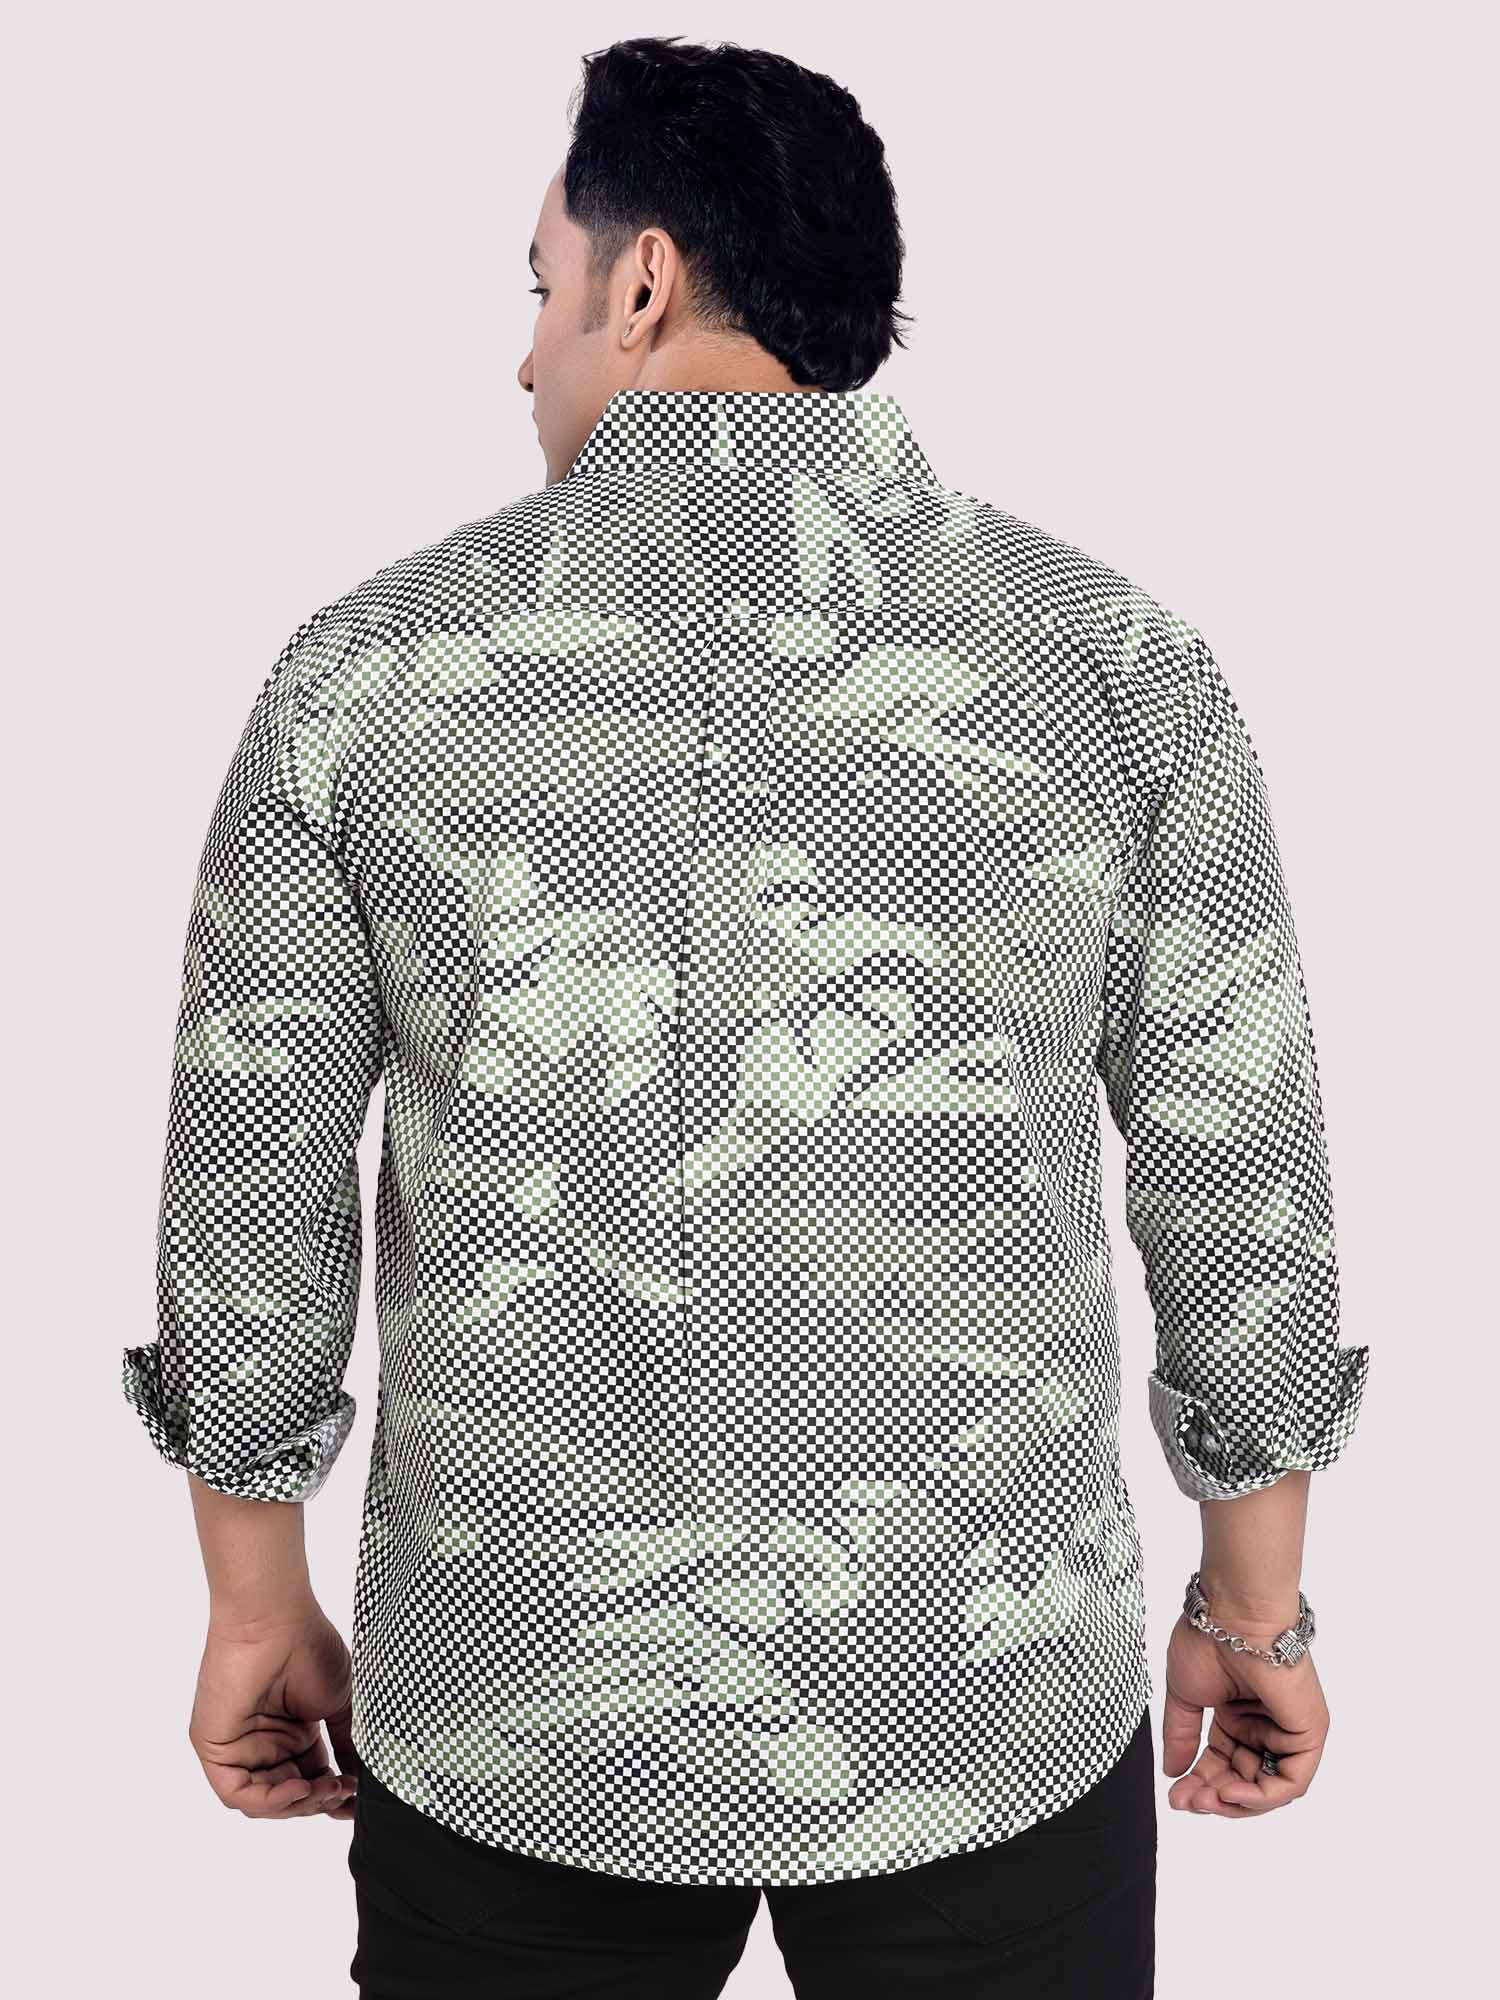 Matrix PrintedÃ‚Â Digital Printed Shirt Men's Plus Size